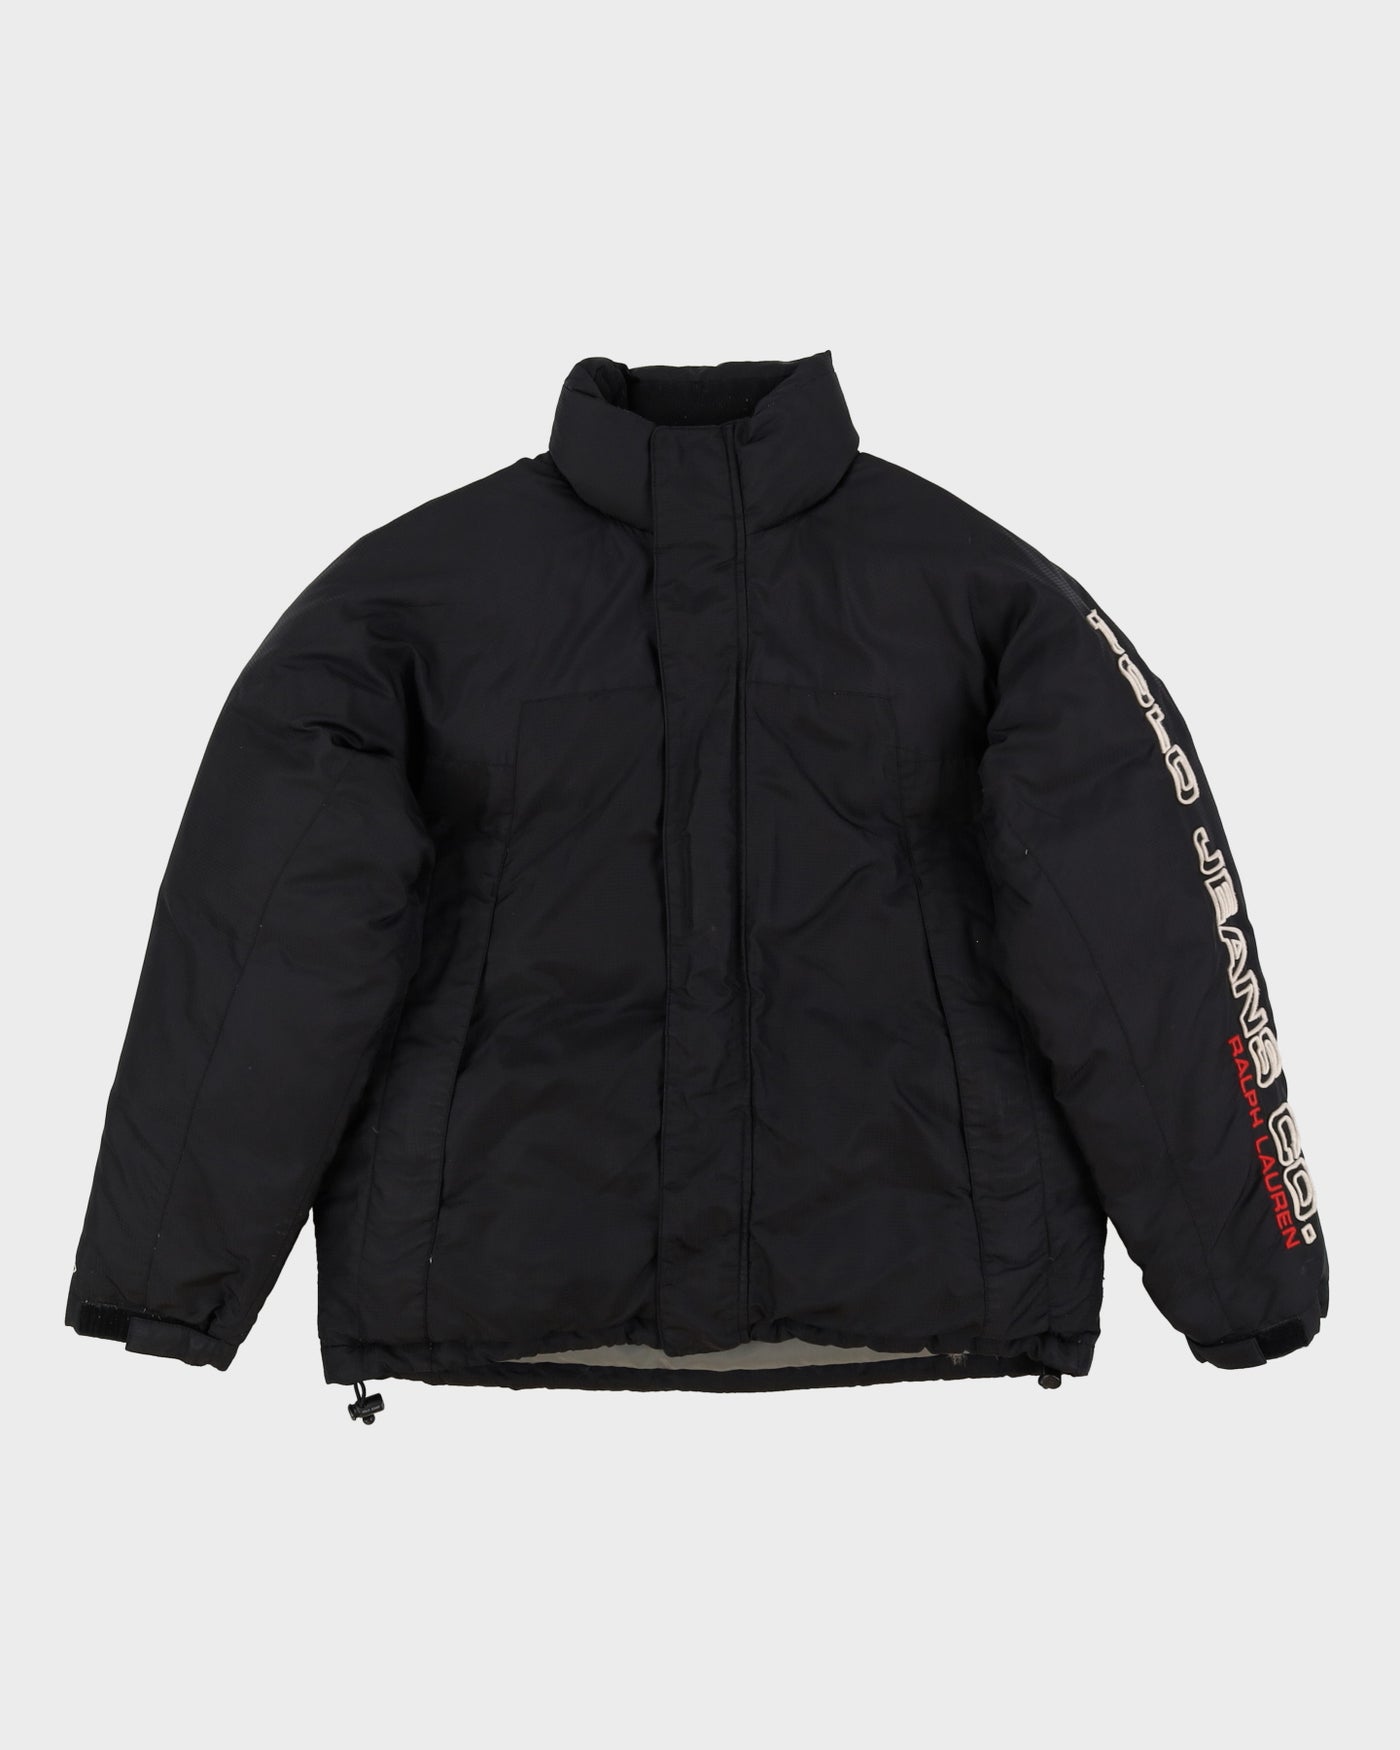 Polo Ralph Lauren Black Puffer Jacket - S